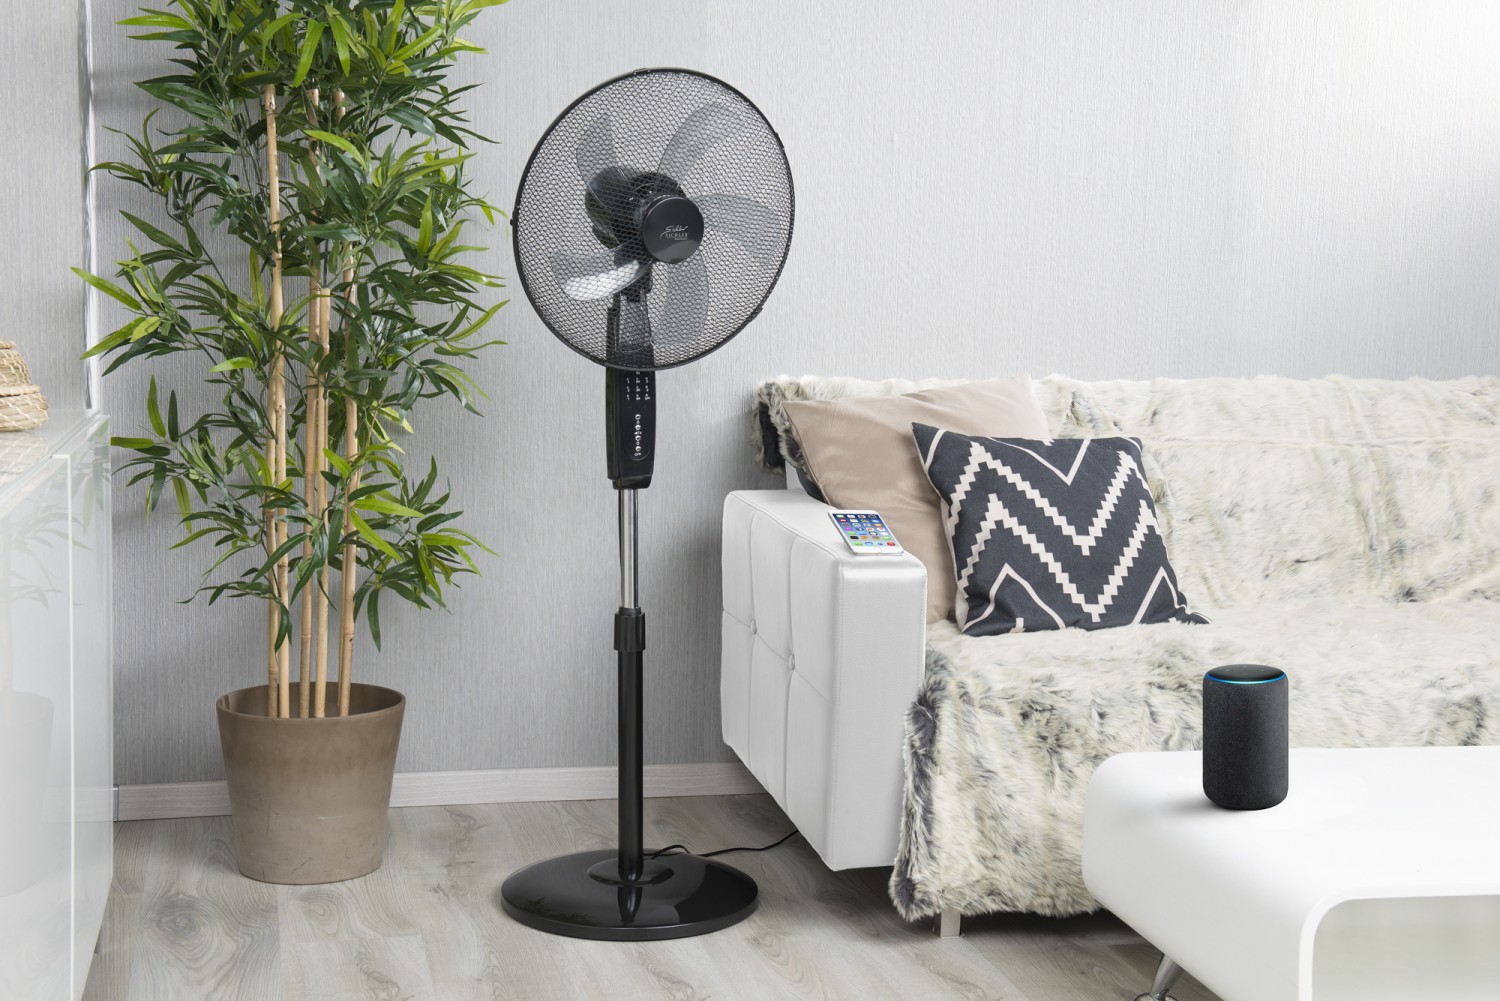 Produktvorstellung WLAN-Ventilator für das Smart Home - App-Steuerung, Amazon Alexa und Google Assistant - News, Bild 1